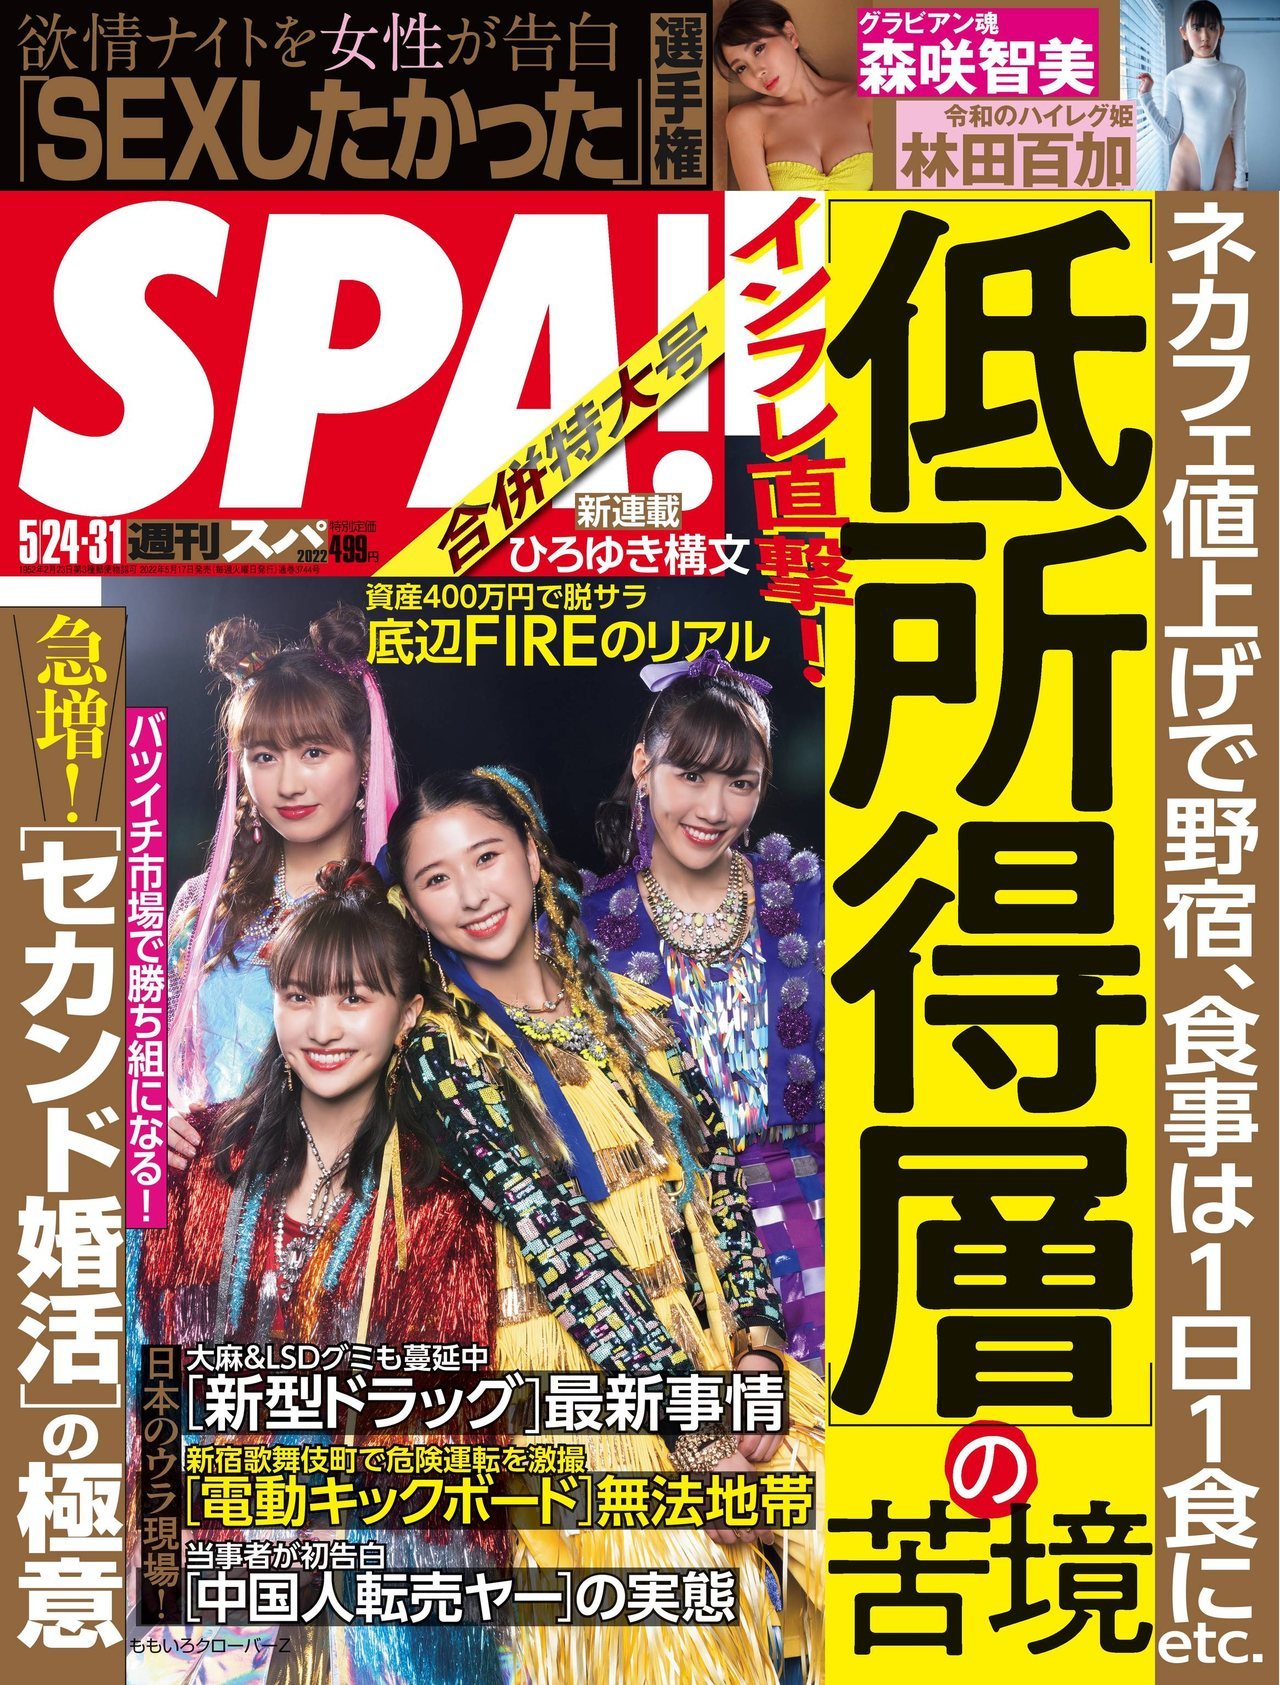 ももいろクローバーZ, Weekly SPA! 2022.05.24 (週刊SPA! 2022年5月24日号) - itotii